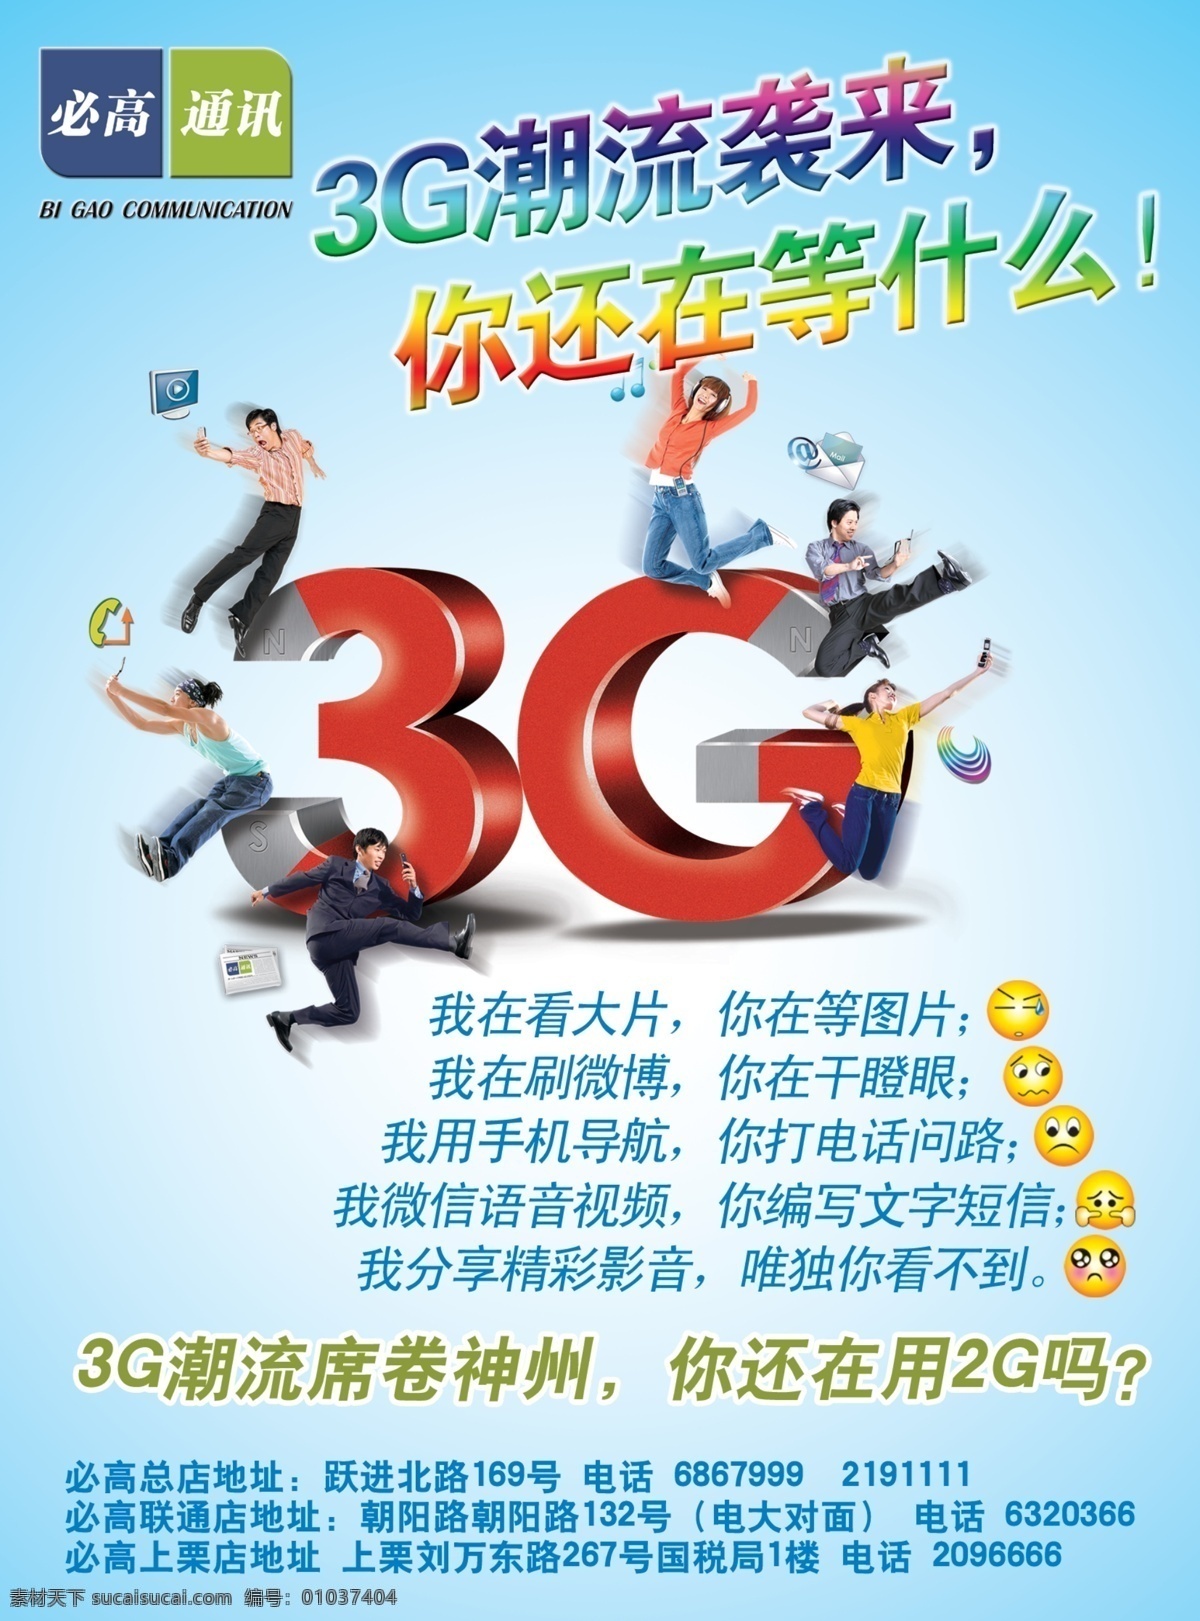 通讯 店 3g 网络 宣传 通讯店 4g 移动数据 青色 天蓝色